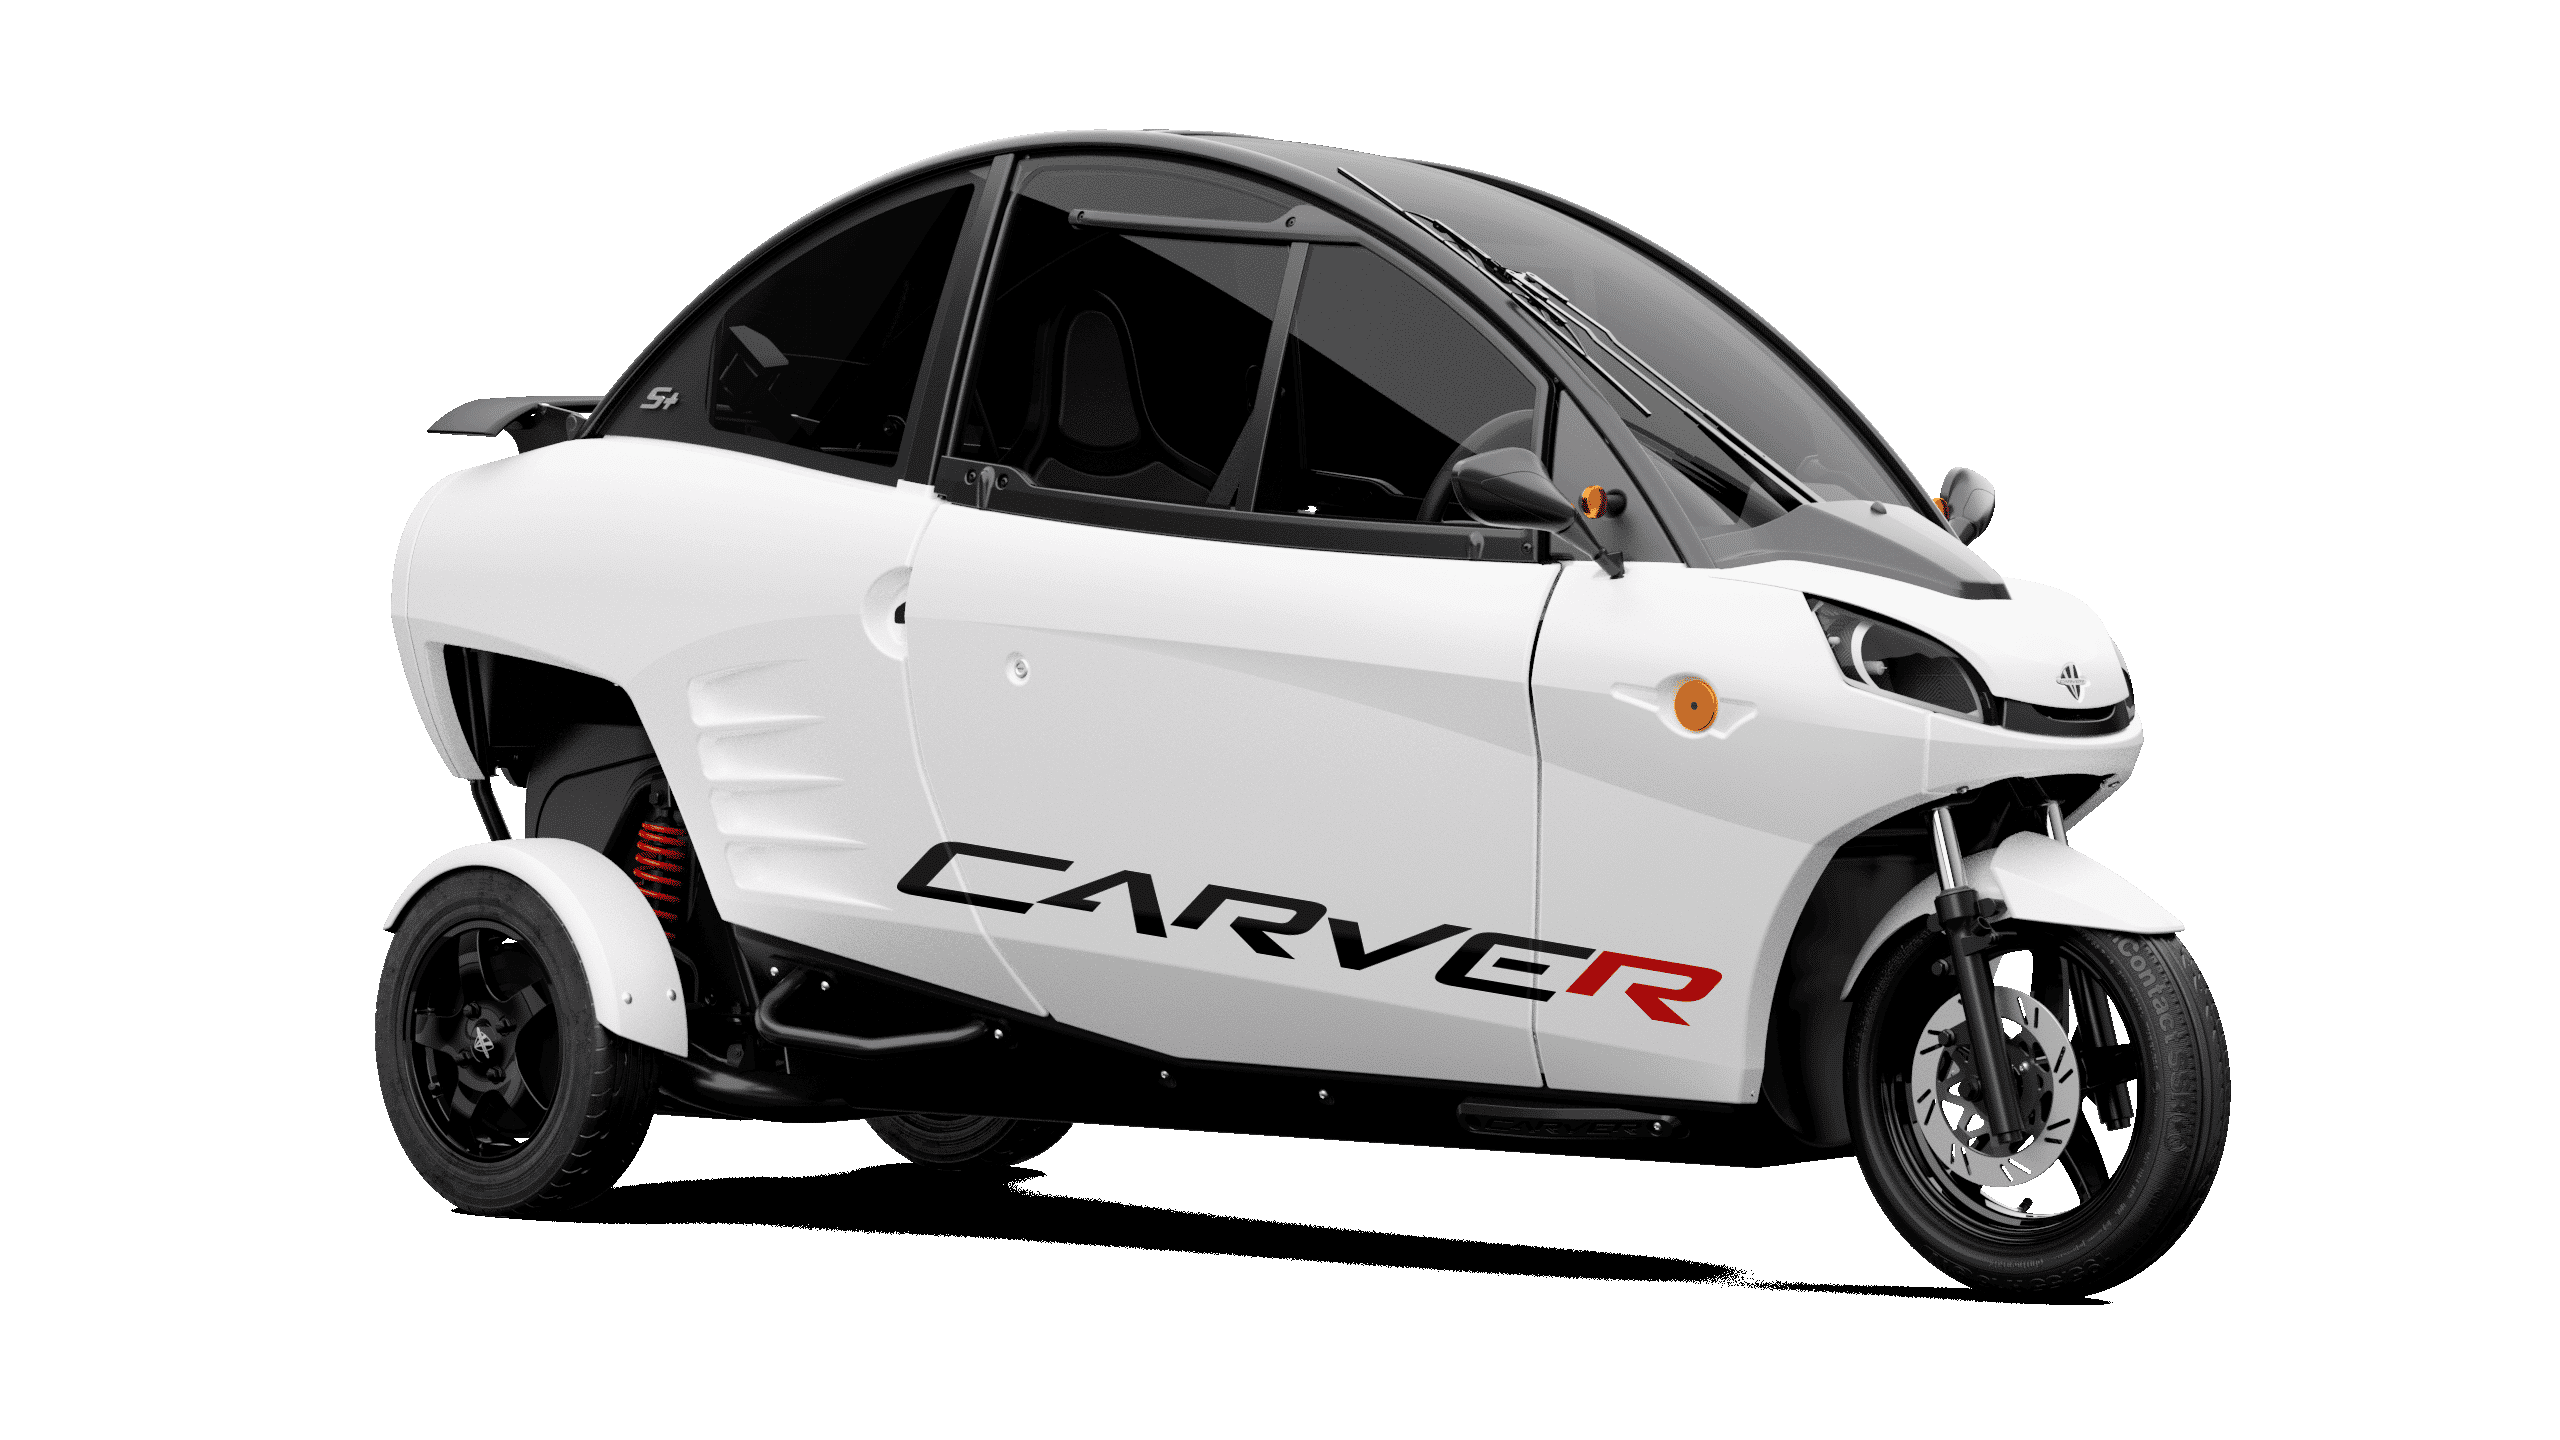 Discover the Carver Carver